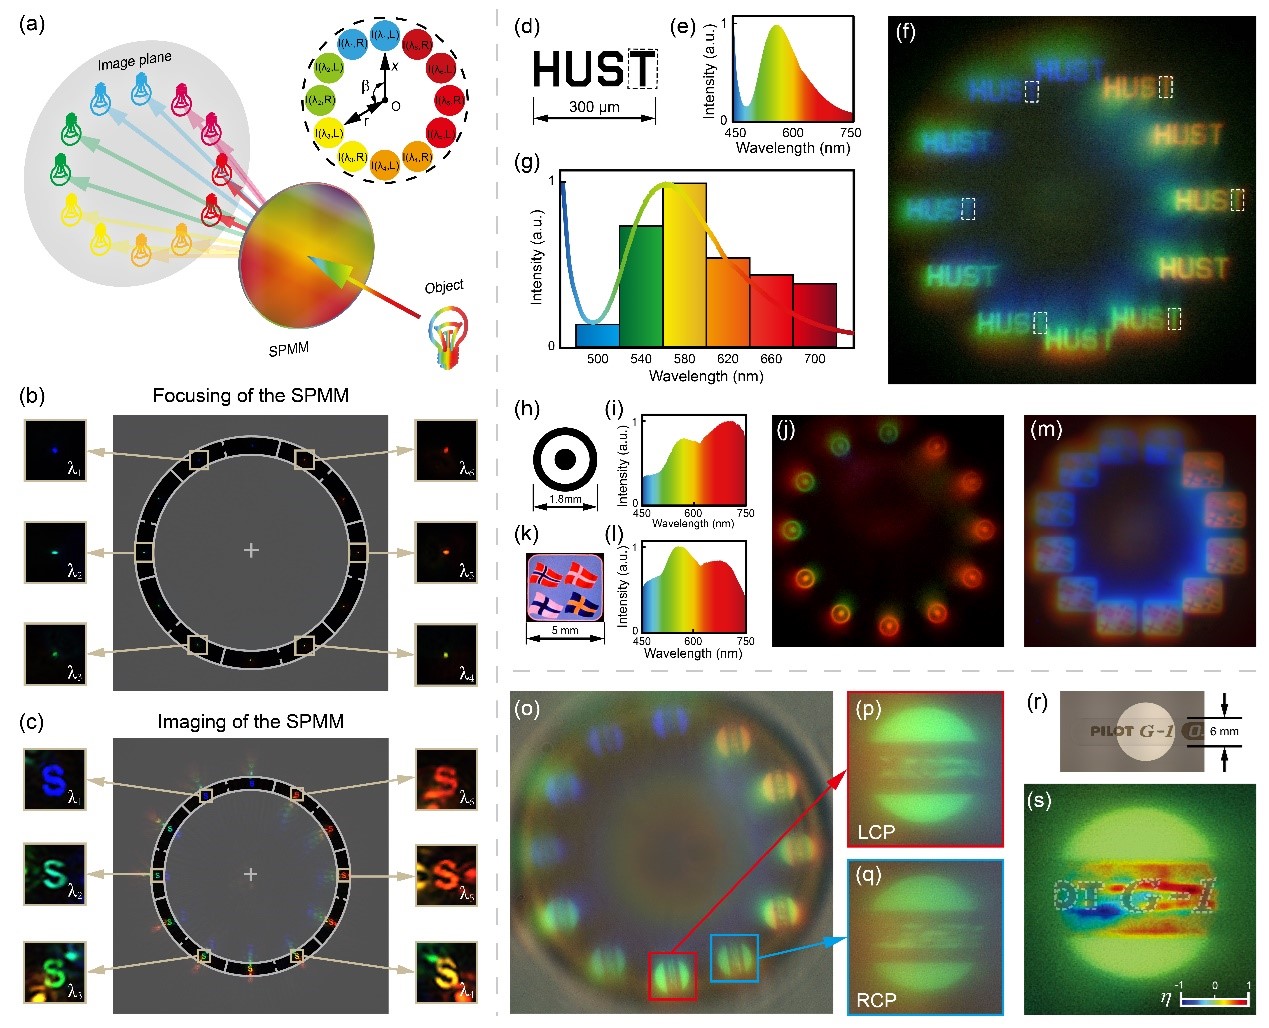 Imagini multispectrale și polarizate folosind SPMM cu fascicule obișnuite de lumină albă